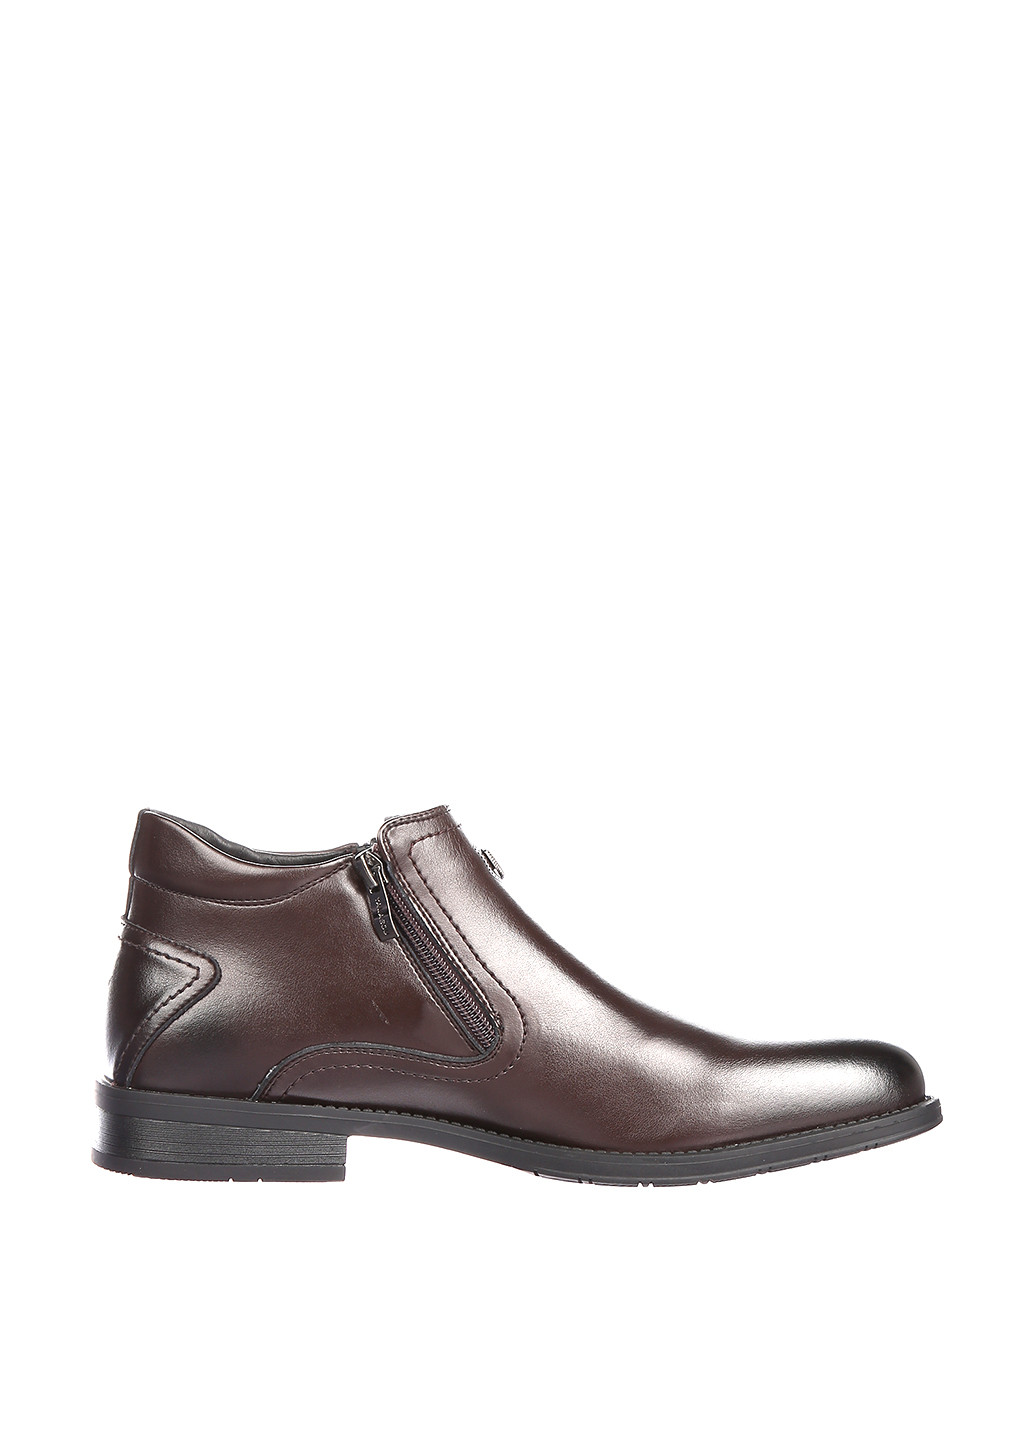 Темно-коричневые осенние ботинки NEW STAR YALASOU